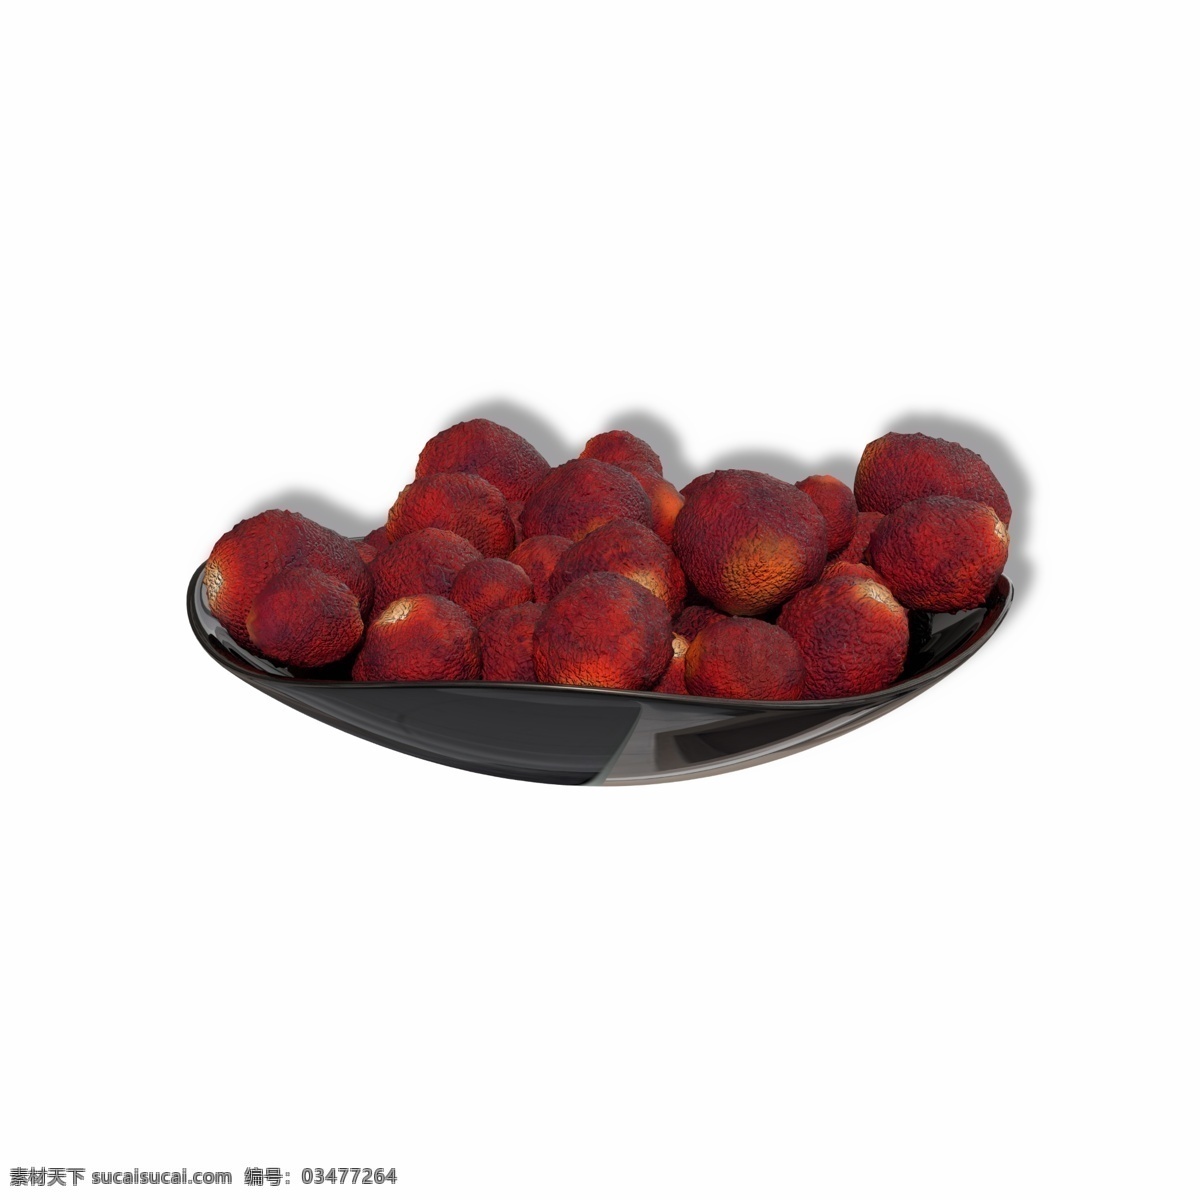 盘 装 红色 新鲜 水果 果实 荔枝 盘子